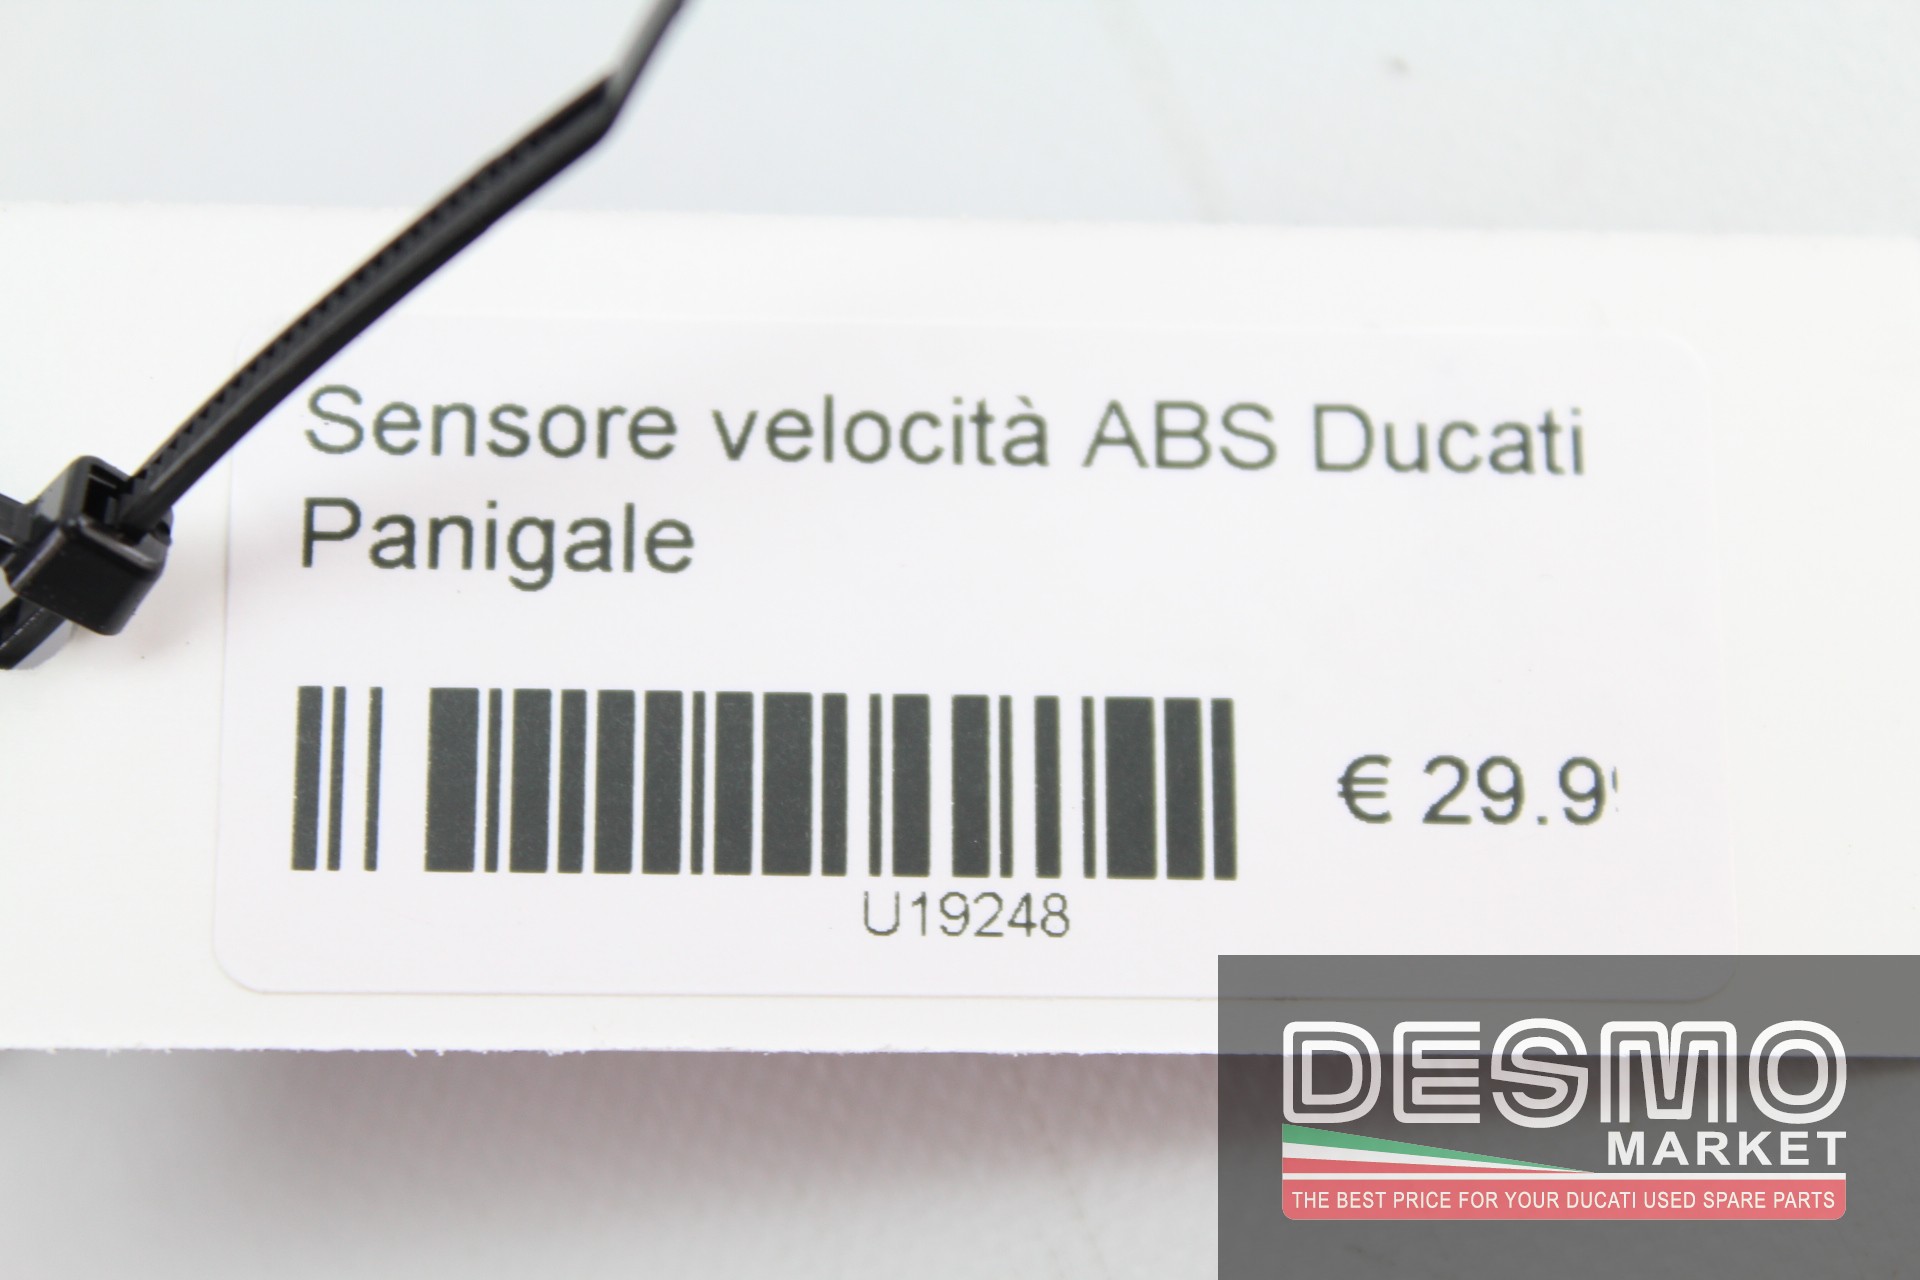 Sensore velocità ABS Ducati Panigale